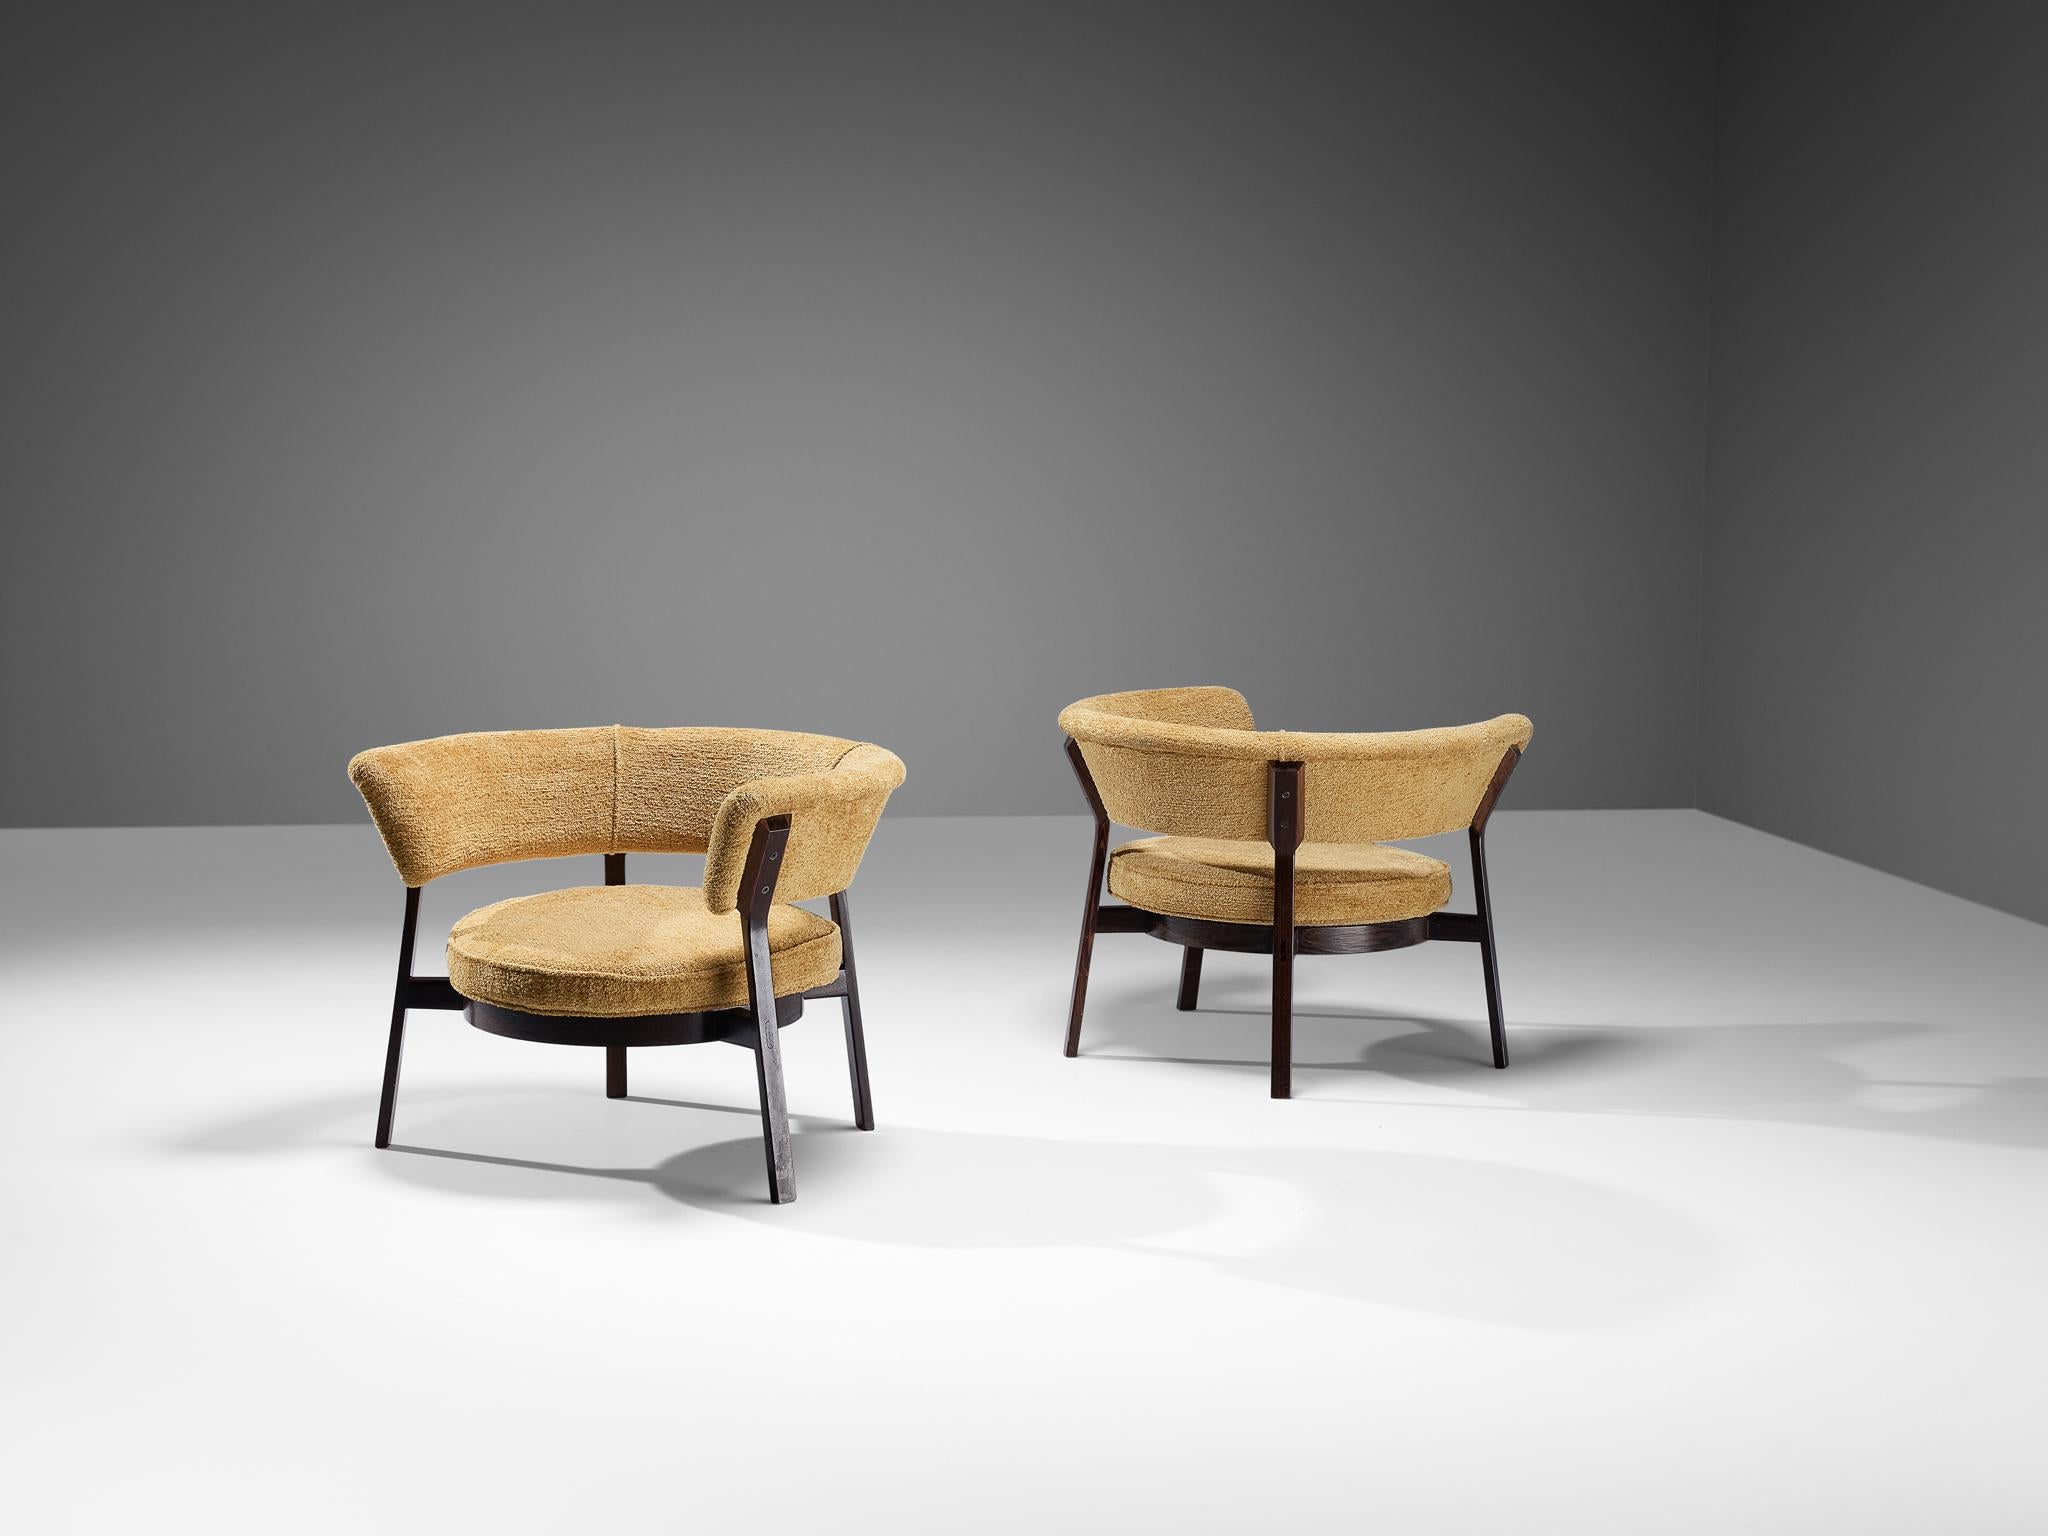 Eugenio Gerli pour Tecno, paire de fauteuils, modèle 'P28', wengé, tissu, Italie, 1958

Eugenio Gerli a conçu ces chaises longues, modèle 